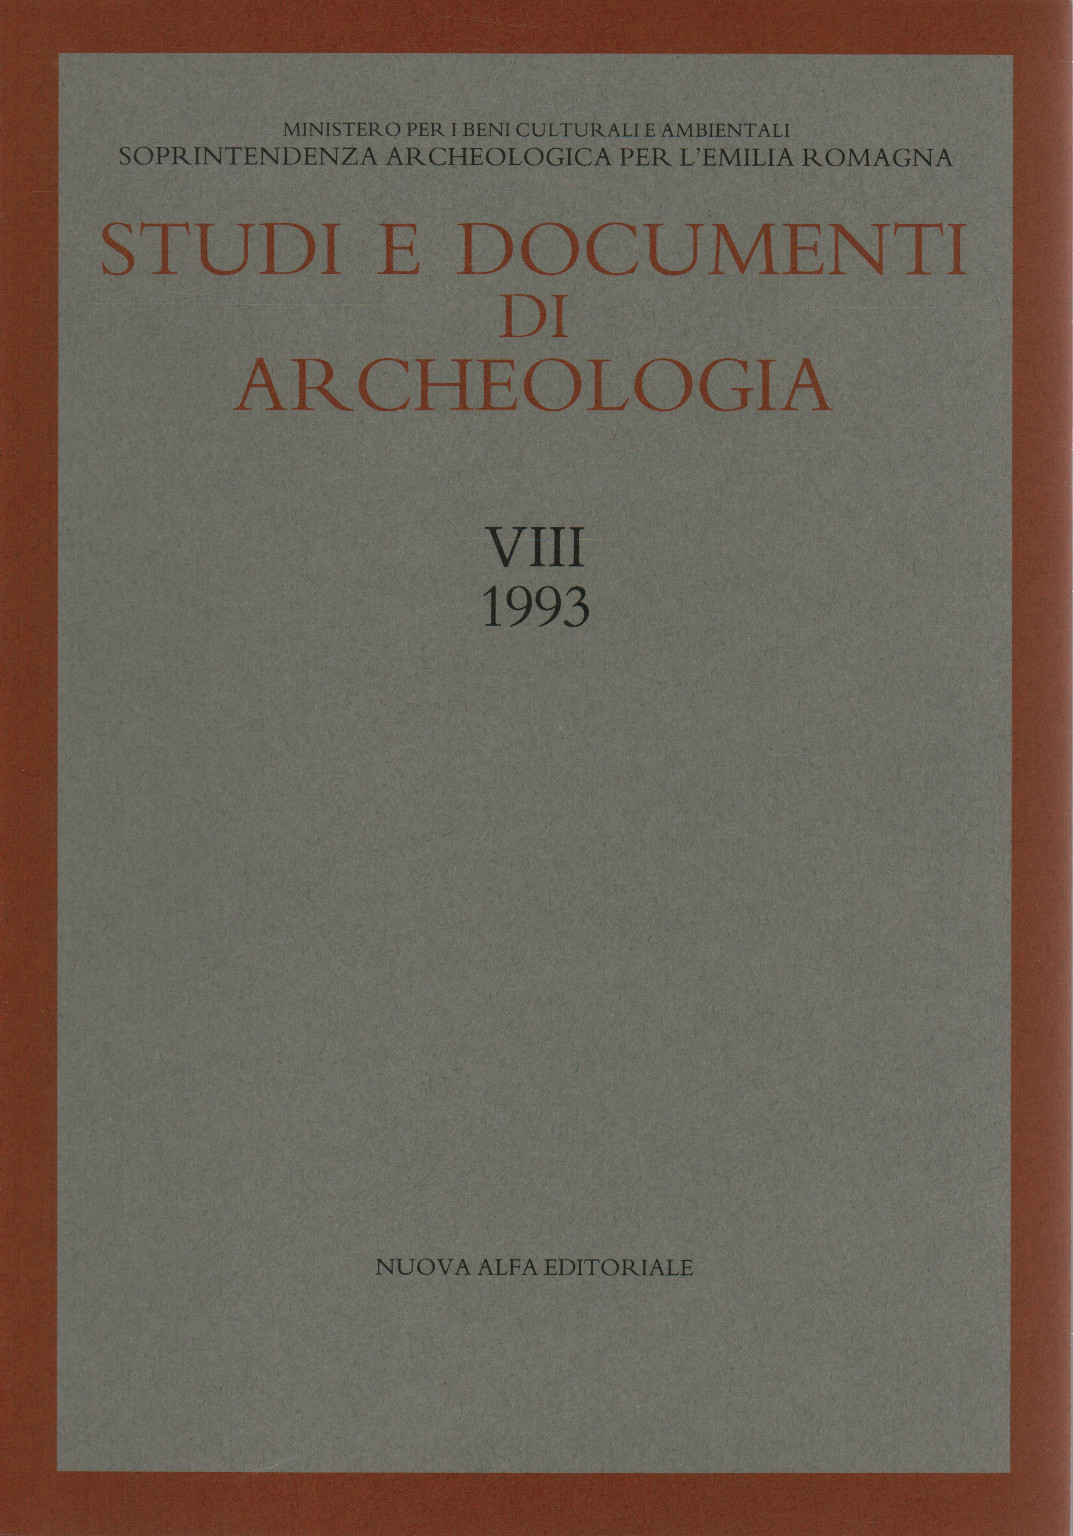 Etudes et documents archéologiques. Vol. VIII (1993), s.a.